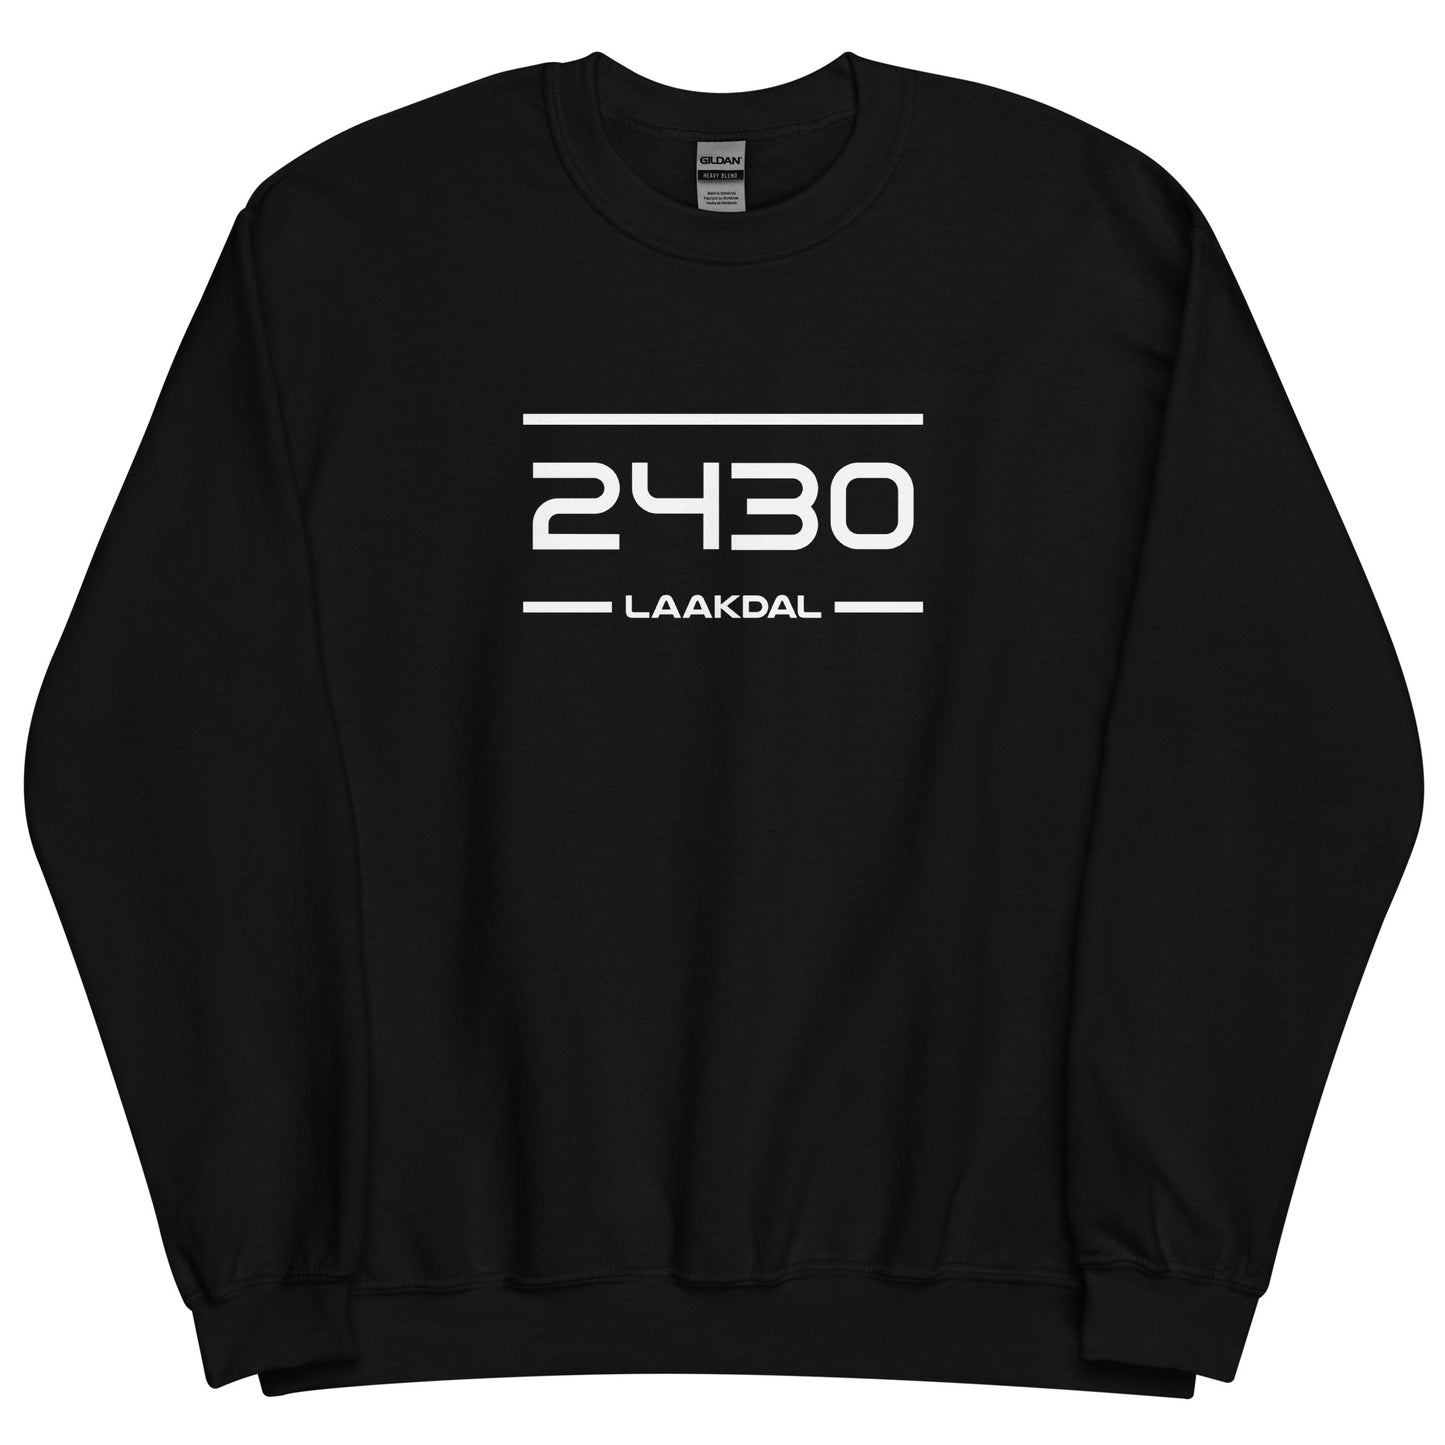 Sweater - 2430 - Laakdal (M/V)